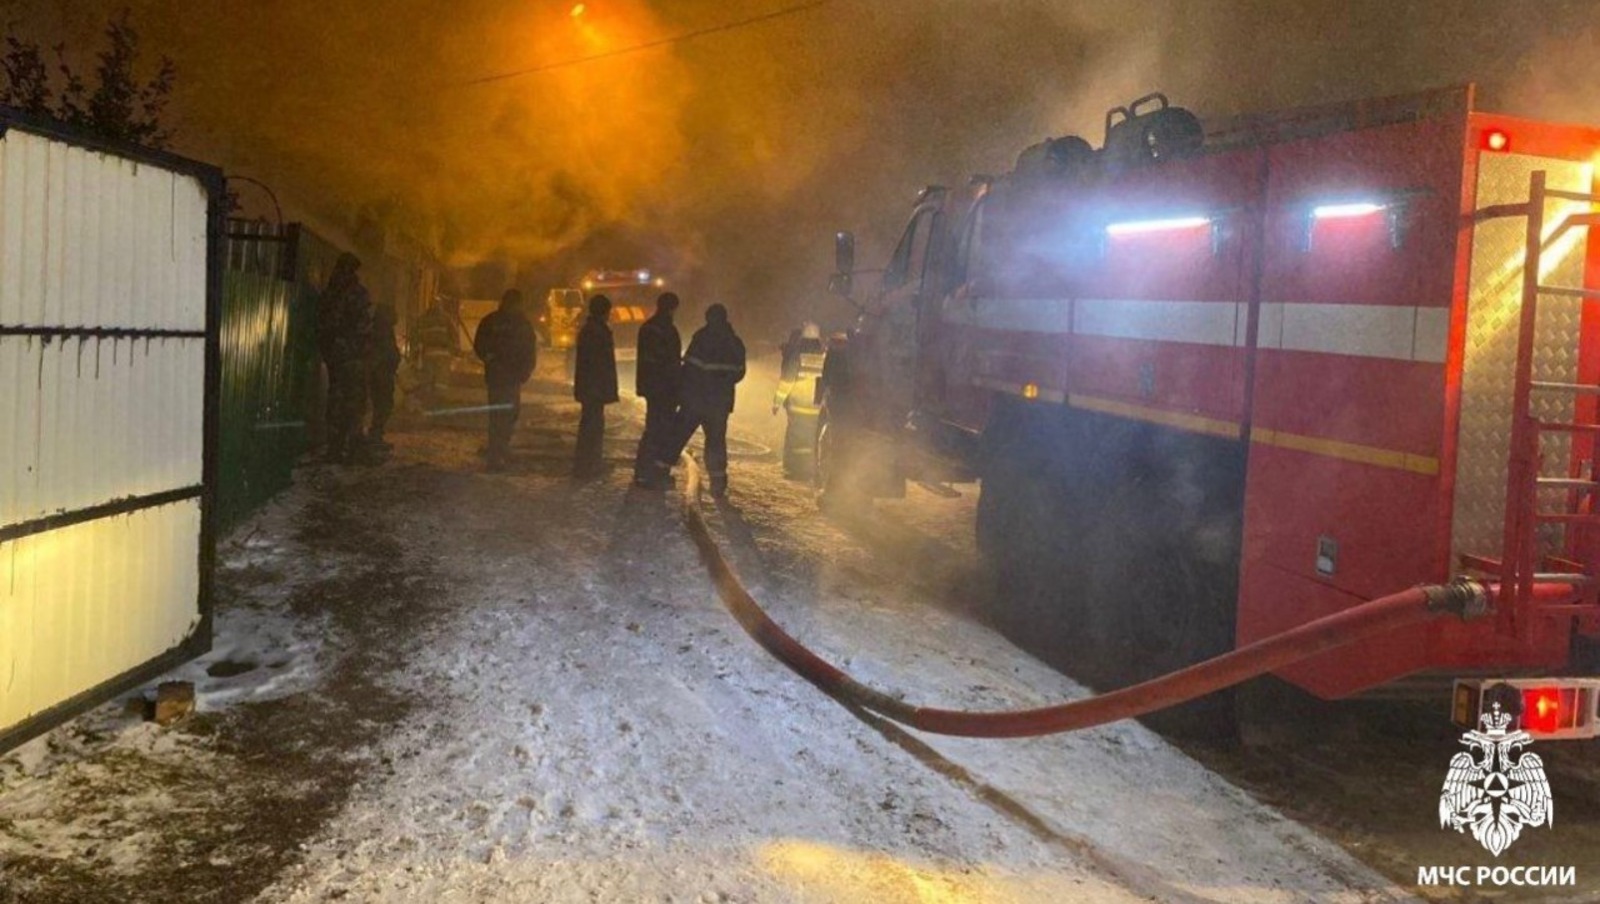 В СКР по Башкирии сообщили подробности смертельного пожара в Матвеевке: двоих детей спас отец